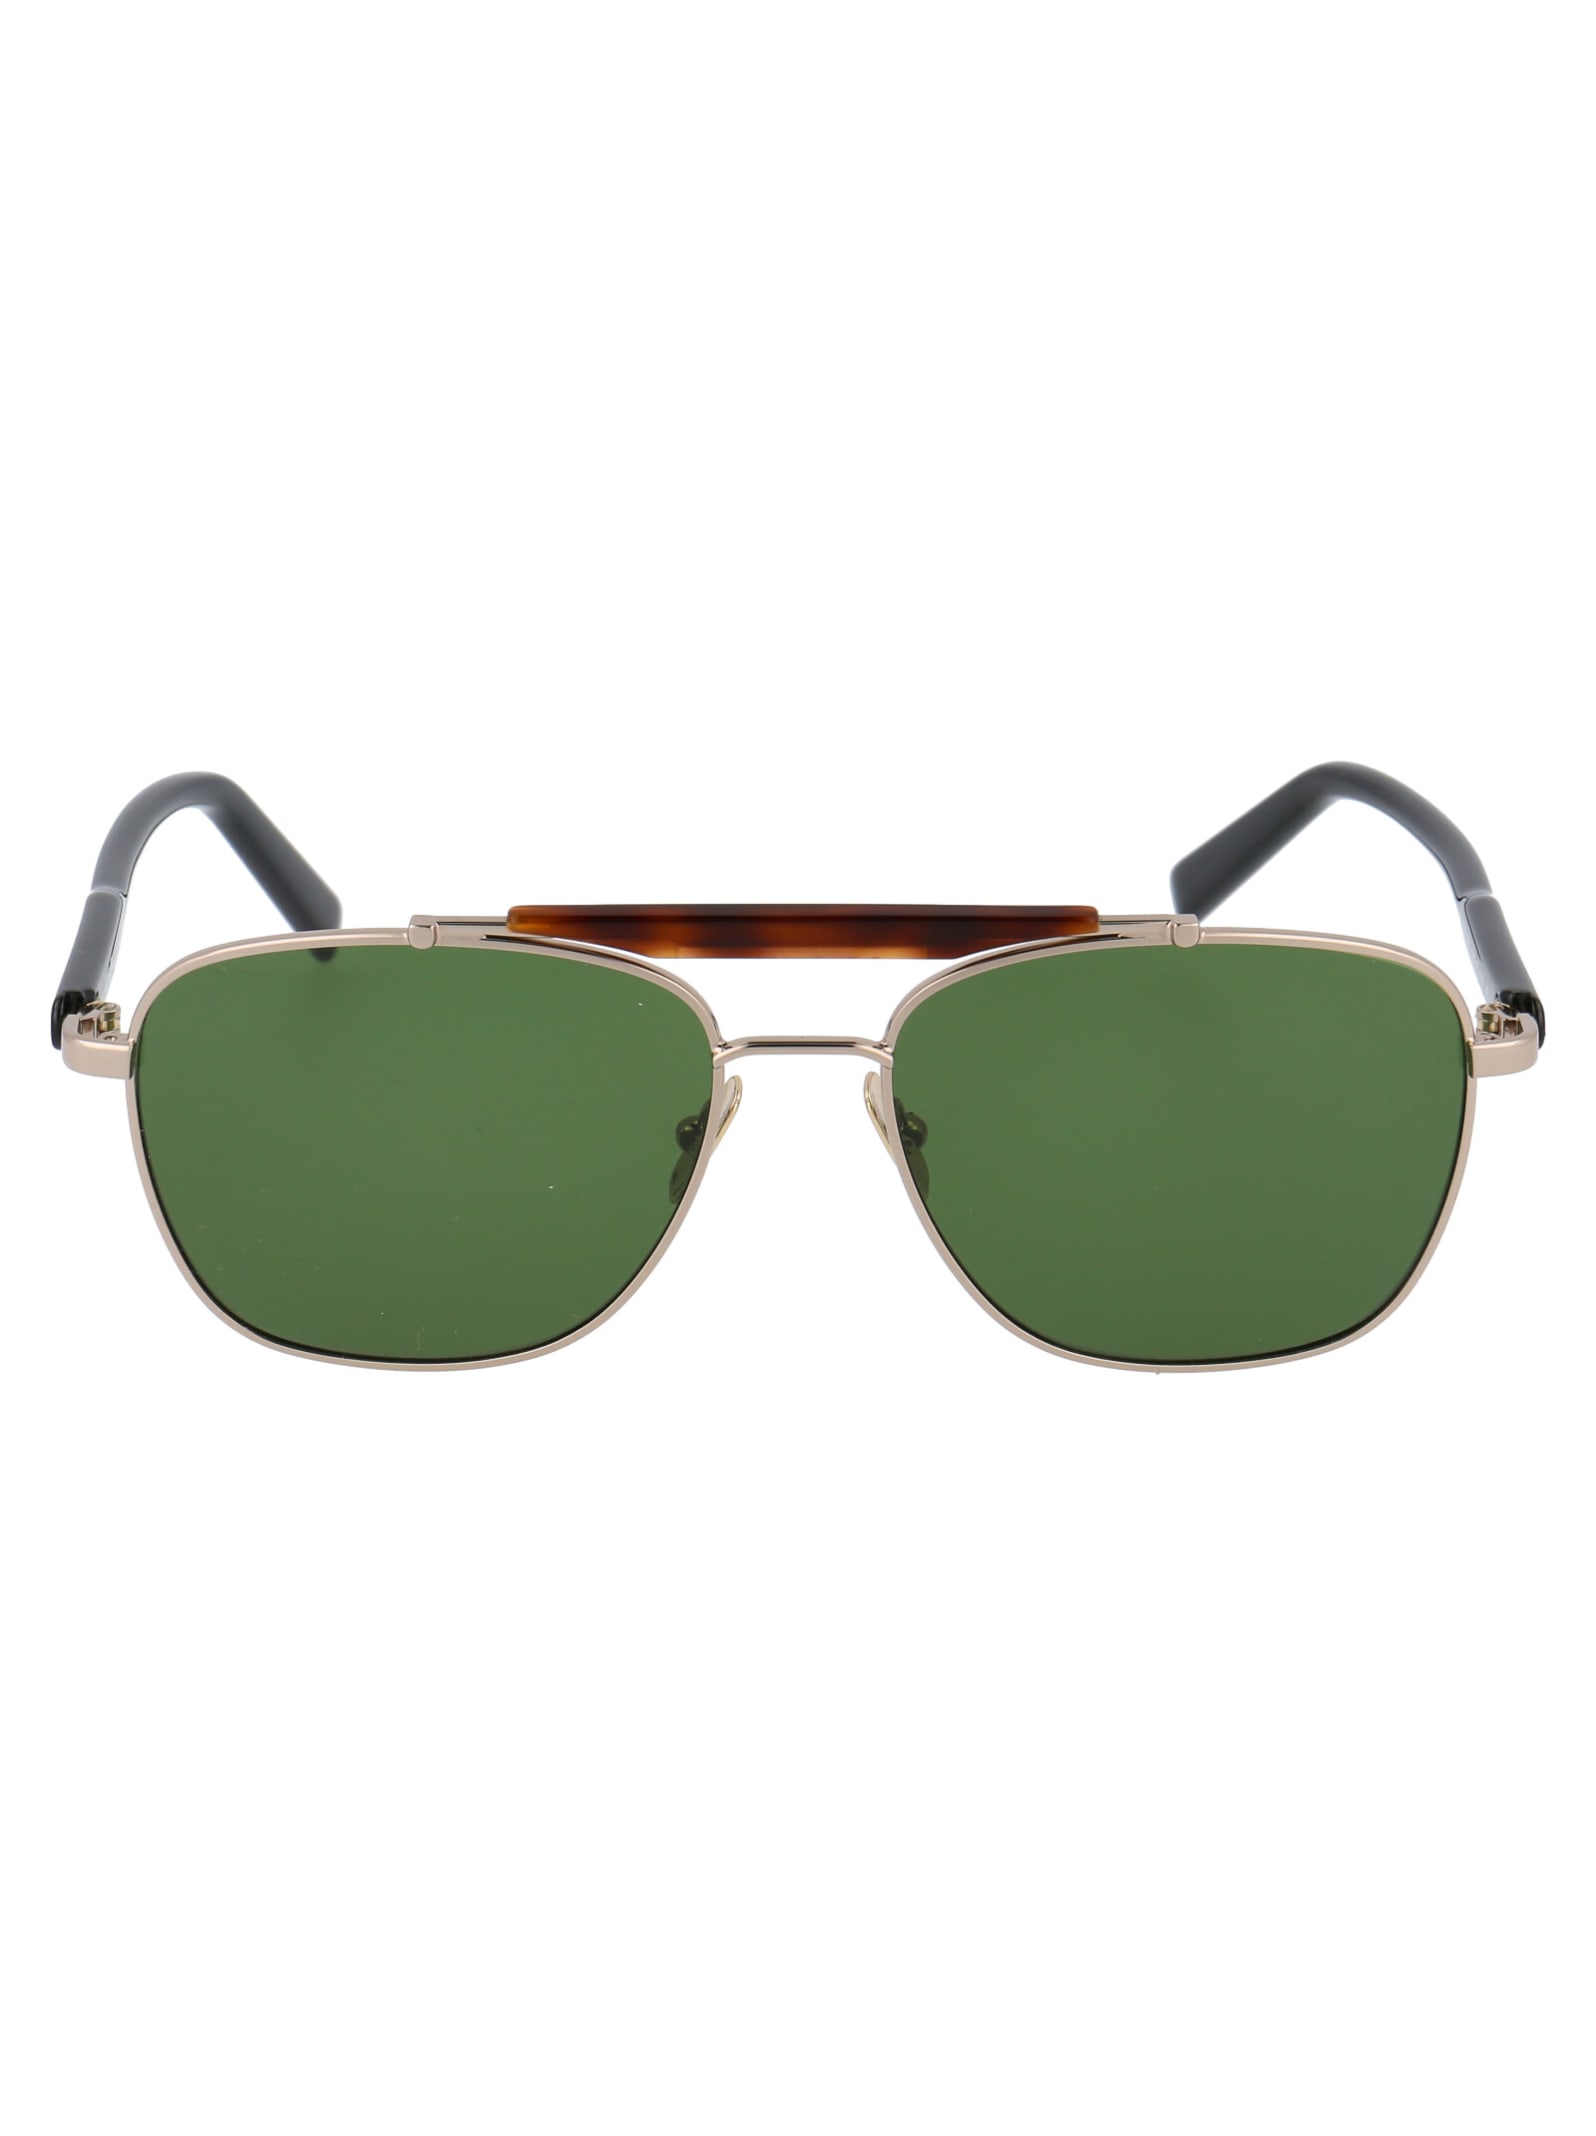 Salvatore Ferragamo sf198s sunglasses